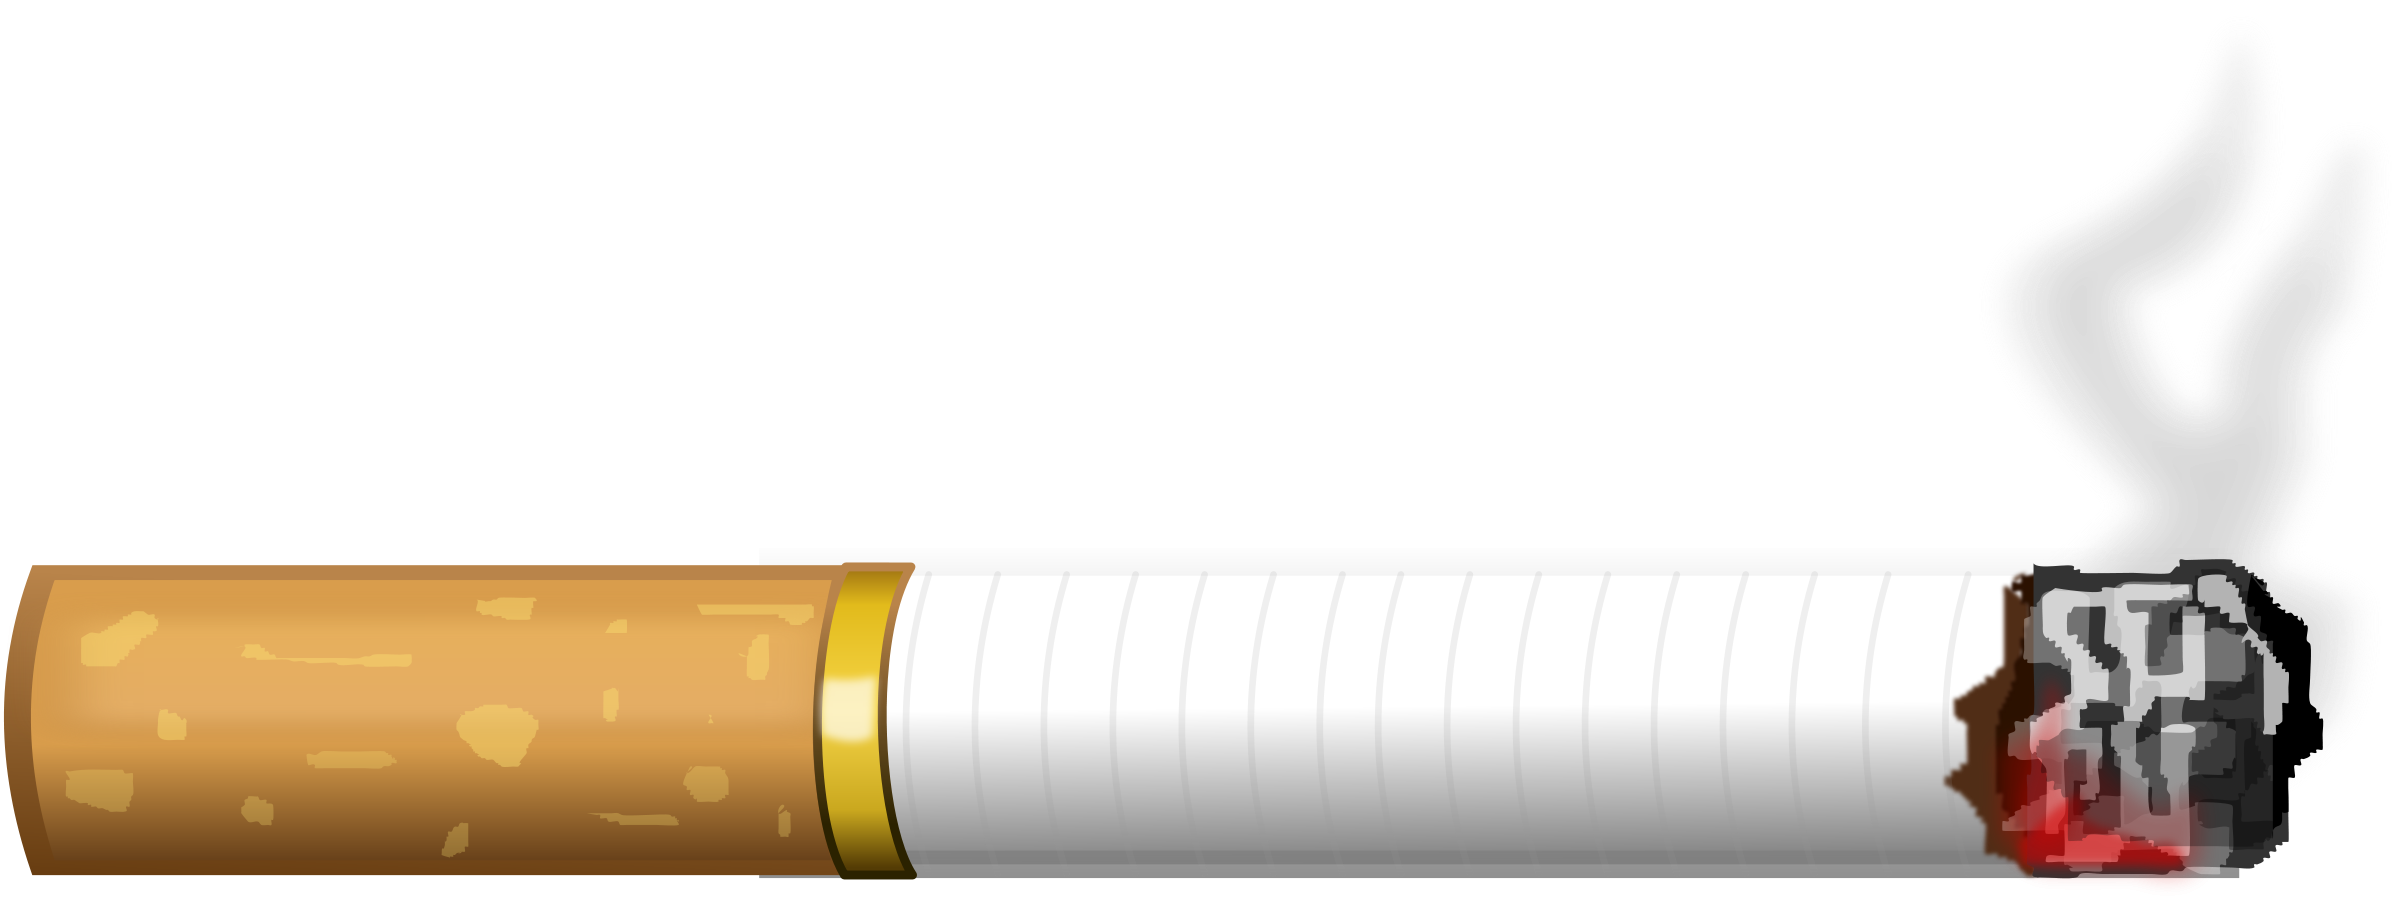 cigarette clipart vector pencil and color cigarette #16483